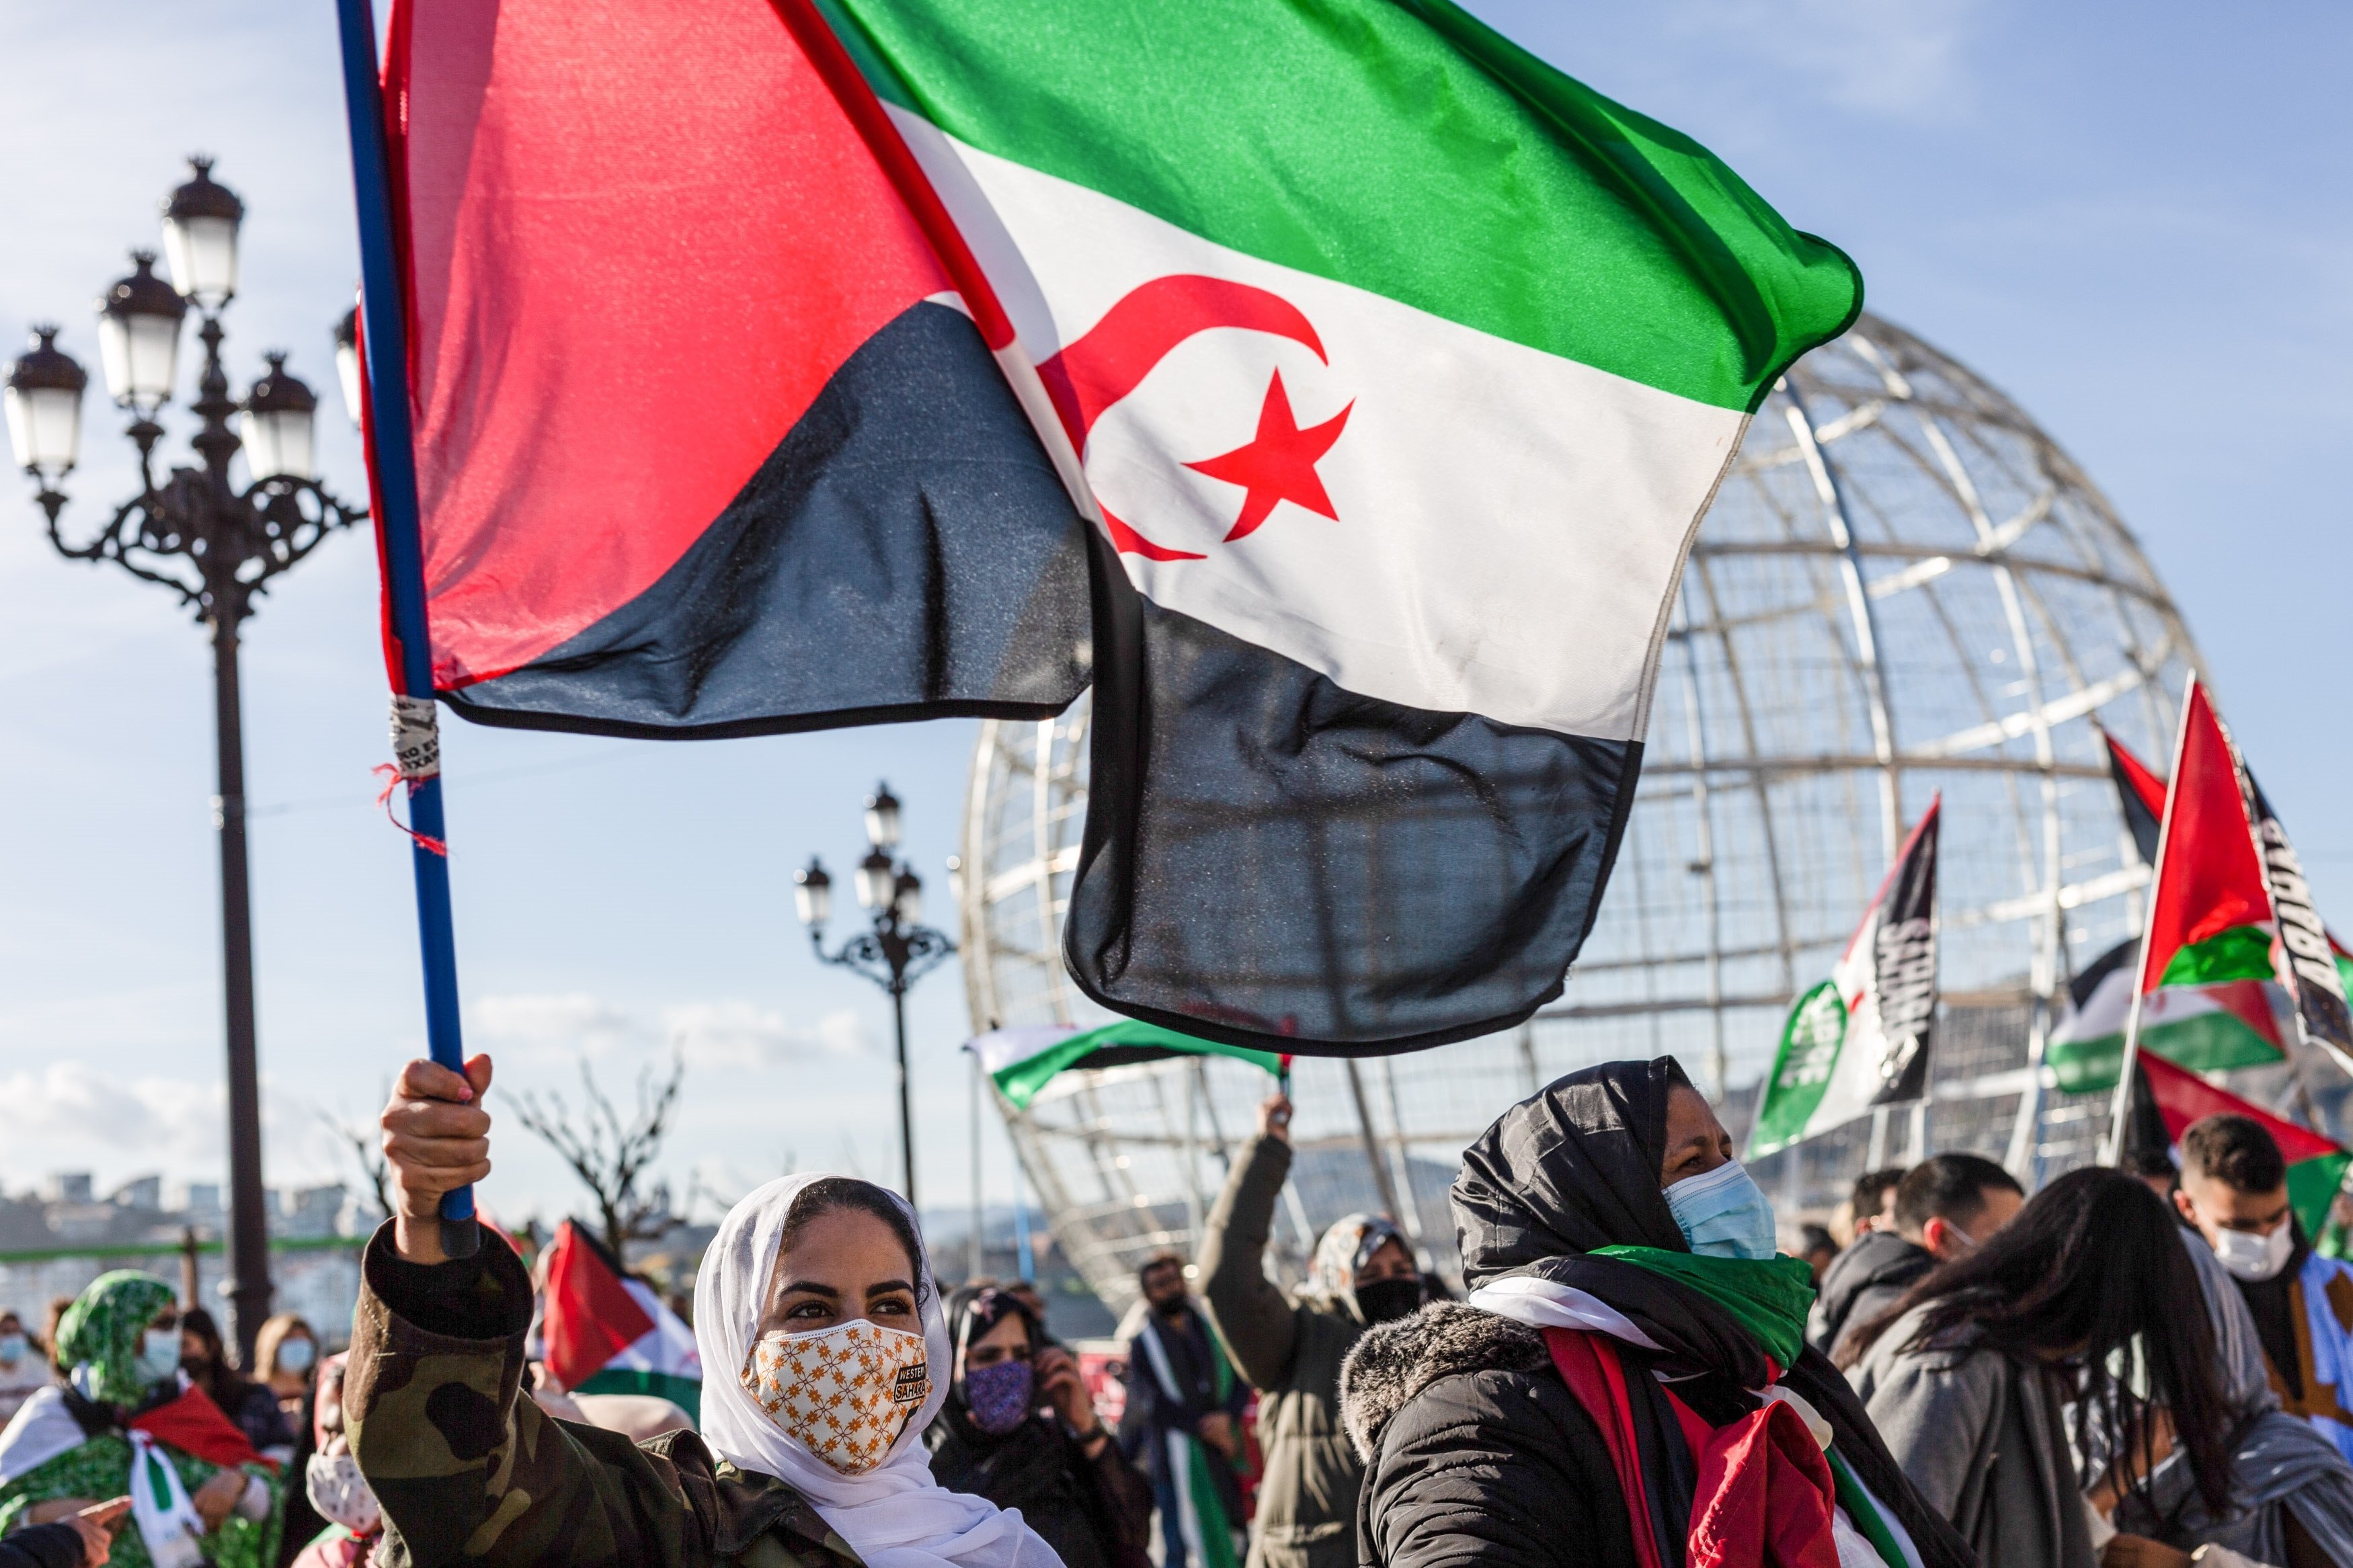 El Polisario evidencia Espanya: l'ONU dona suport a l'autodeterminació del Sàhara